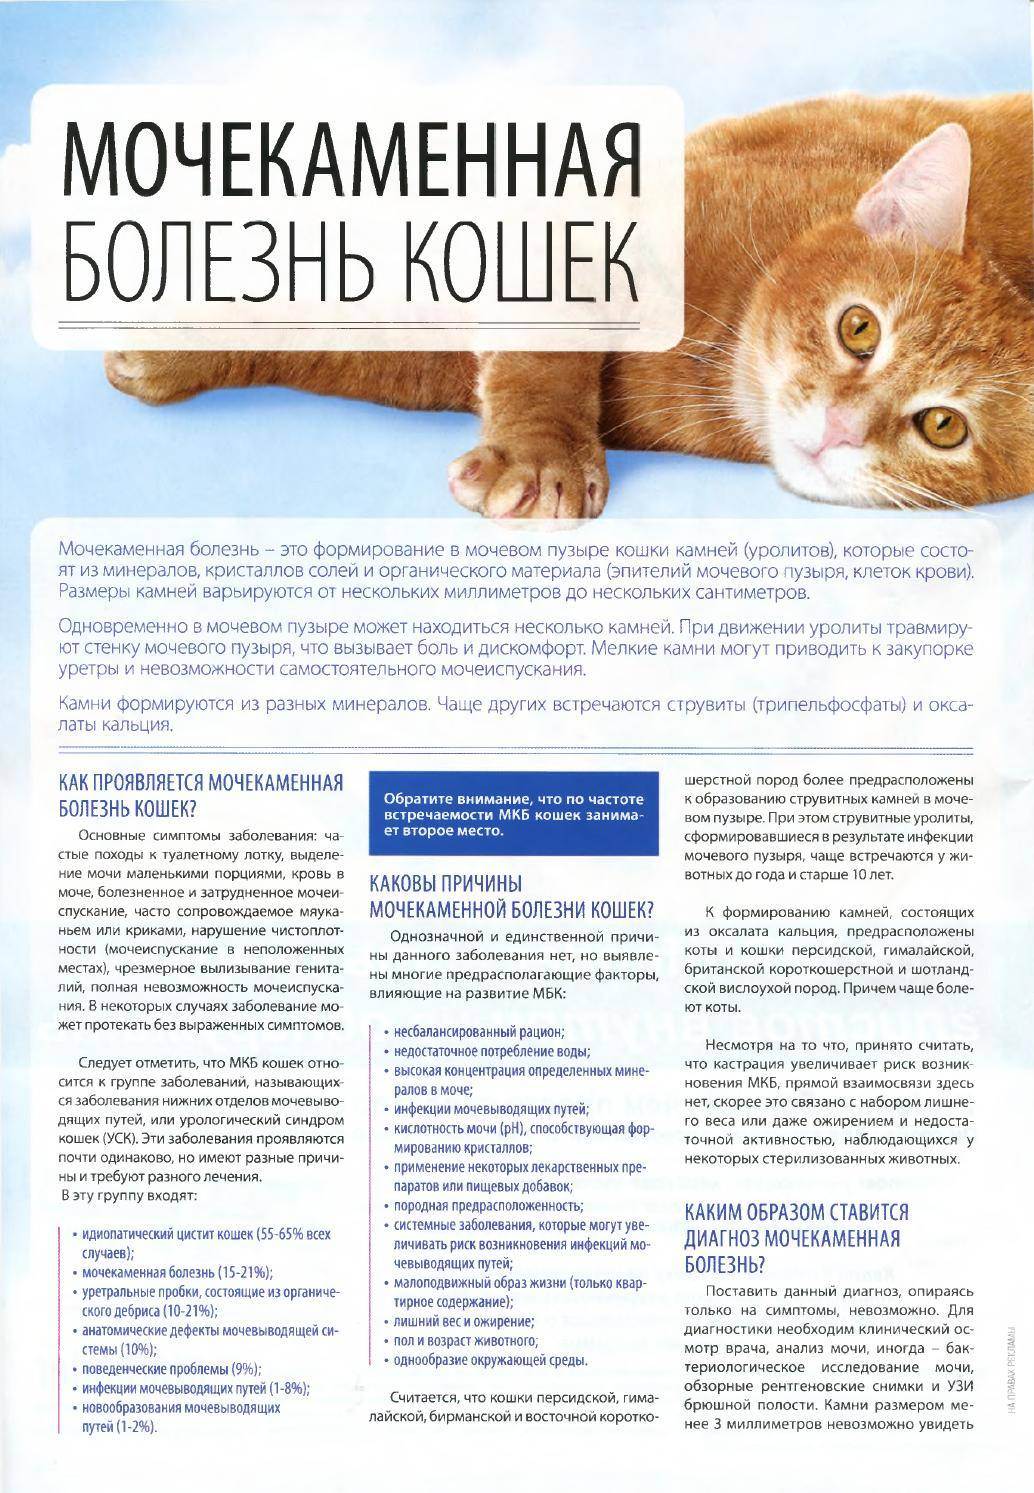 Болезни кошек - 15 симптомов и лечение, признаки